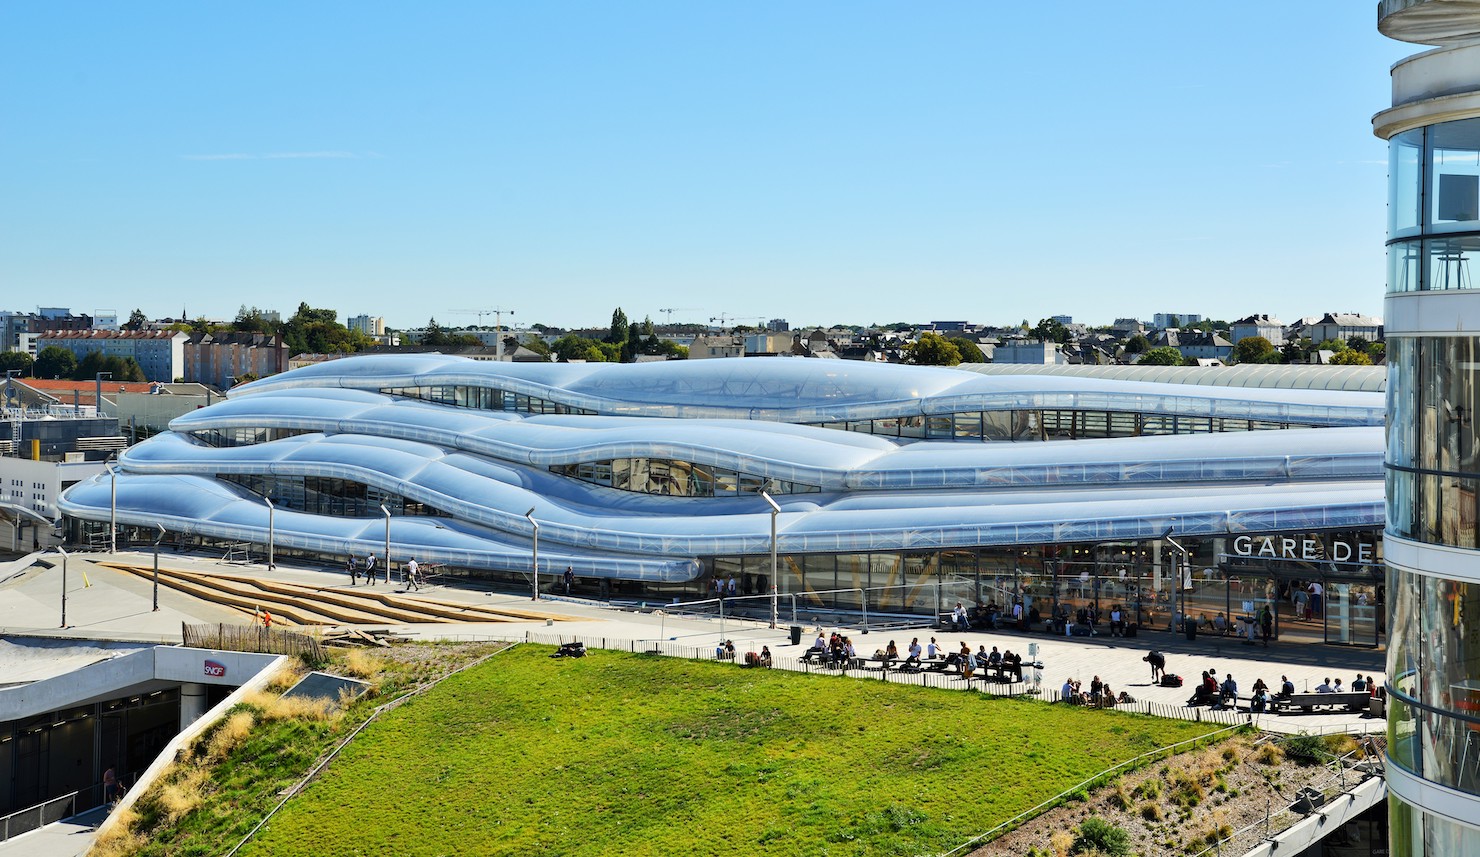 La gare de Rennes reçoit le prix de "Gare de l'année" Rennes Business